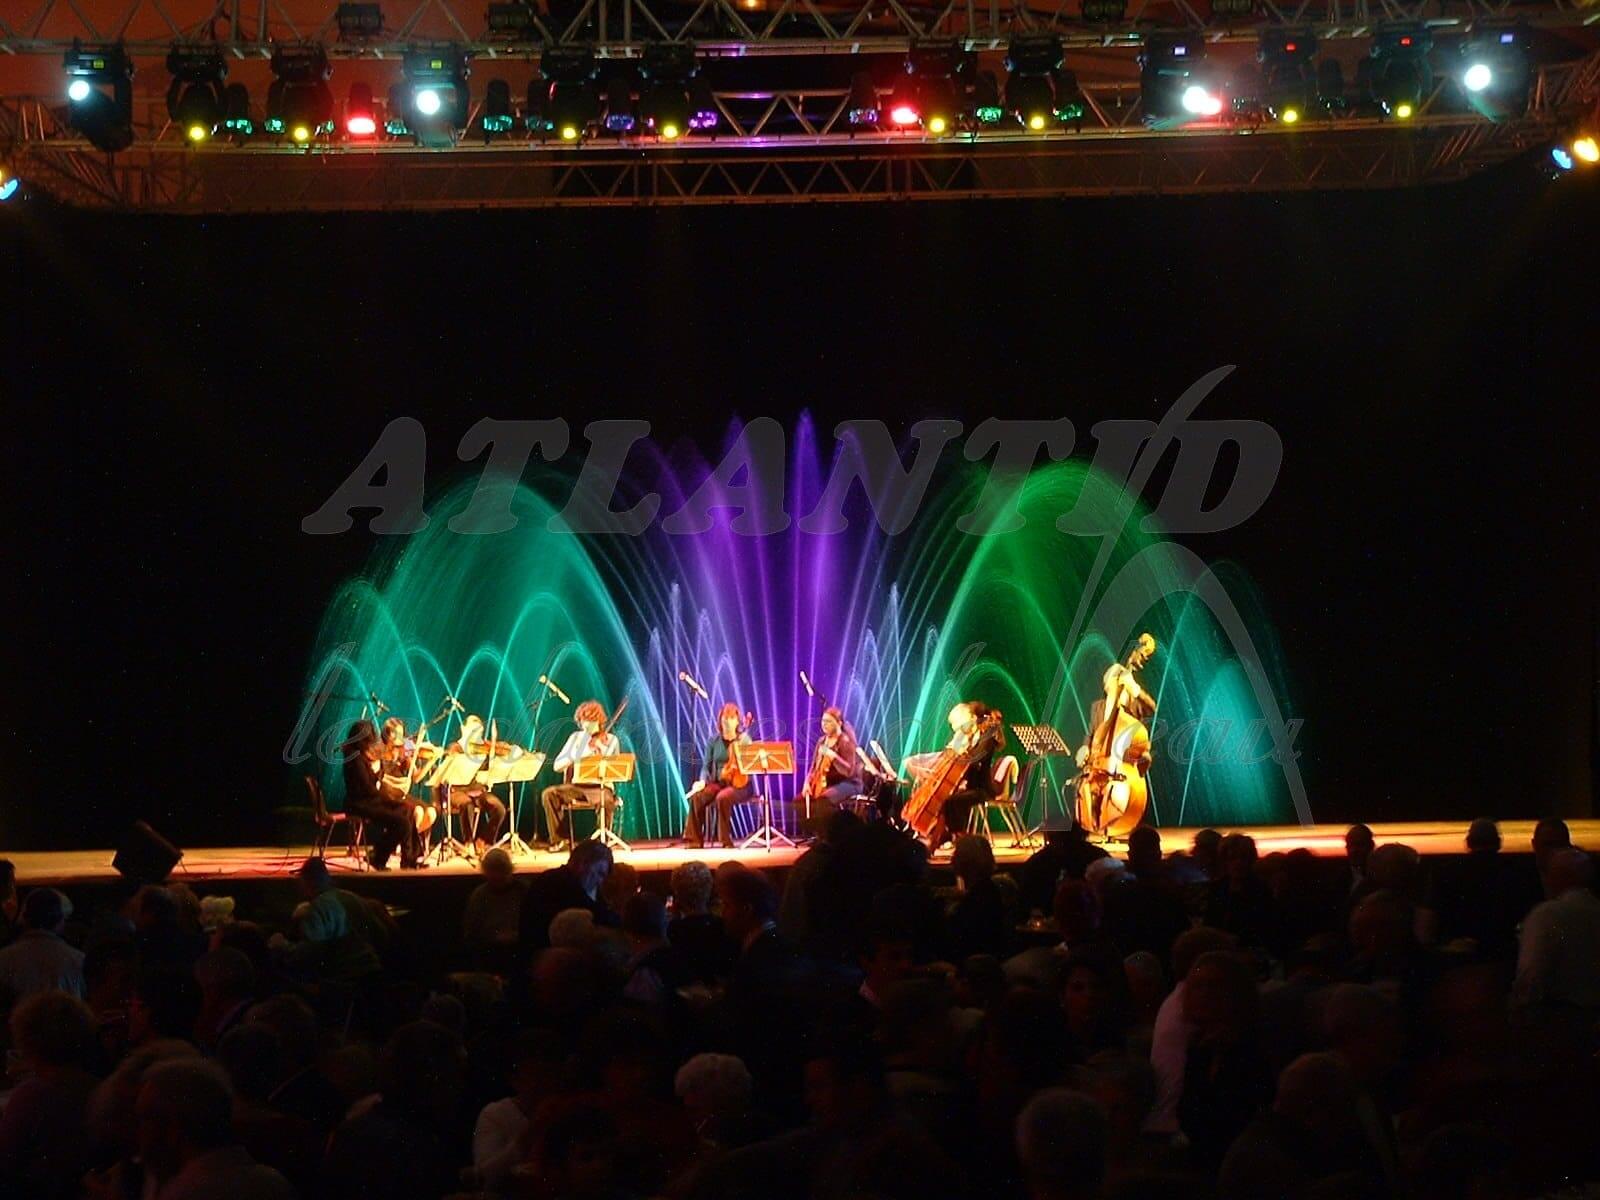 Atlantid - Show con orquesta - Chorros de agua bicolor delante de un concierto